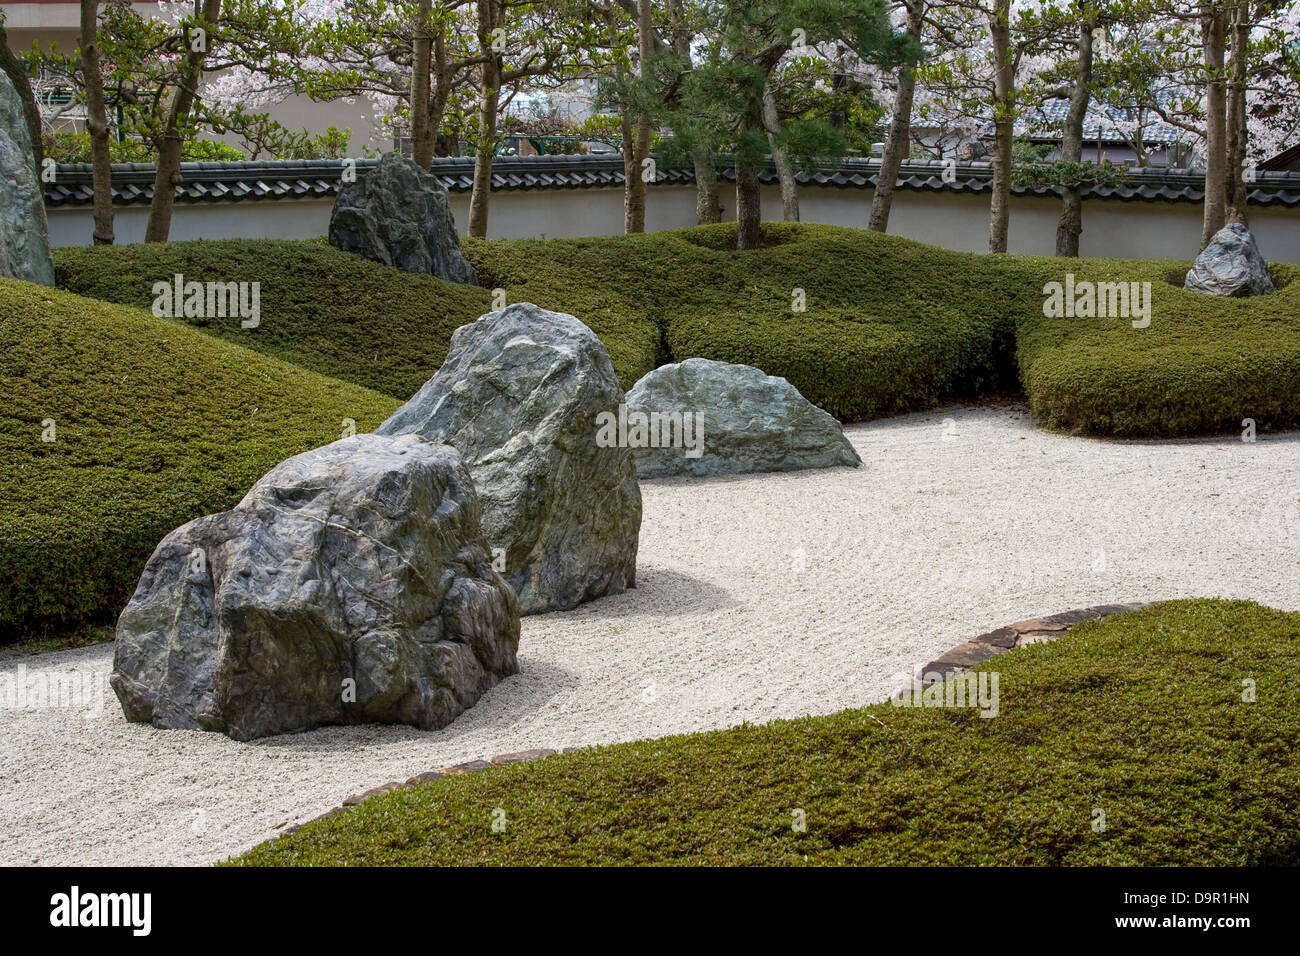 Komyoji Garten ist ein seltenes Beispiel eines trockenen oder "Zengarten", wie dieser Tempel nicht der Zen-Sekte des Buddhismus ist. Stockfoto